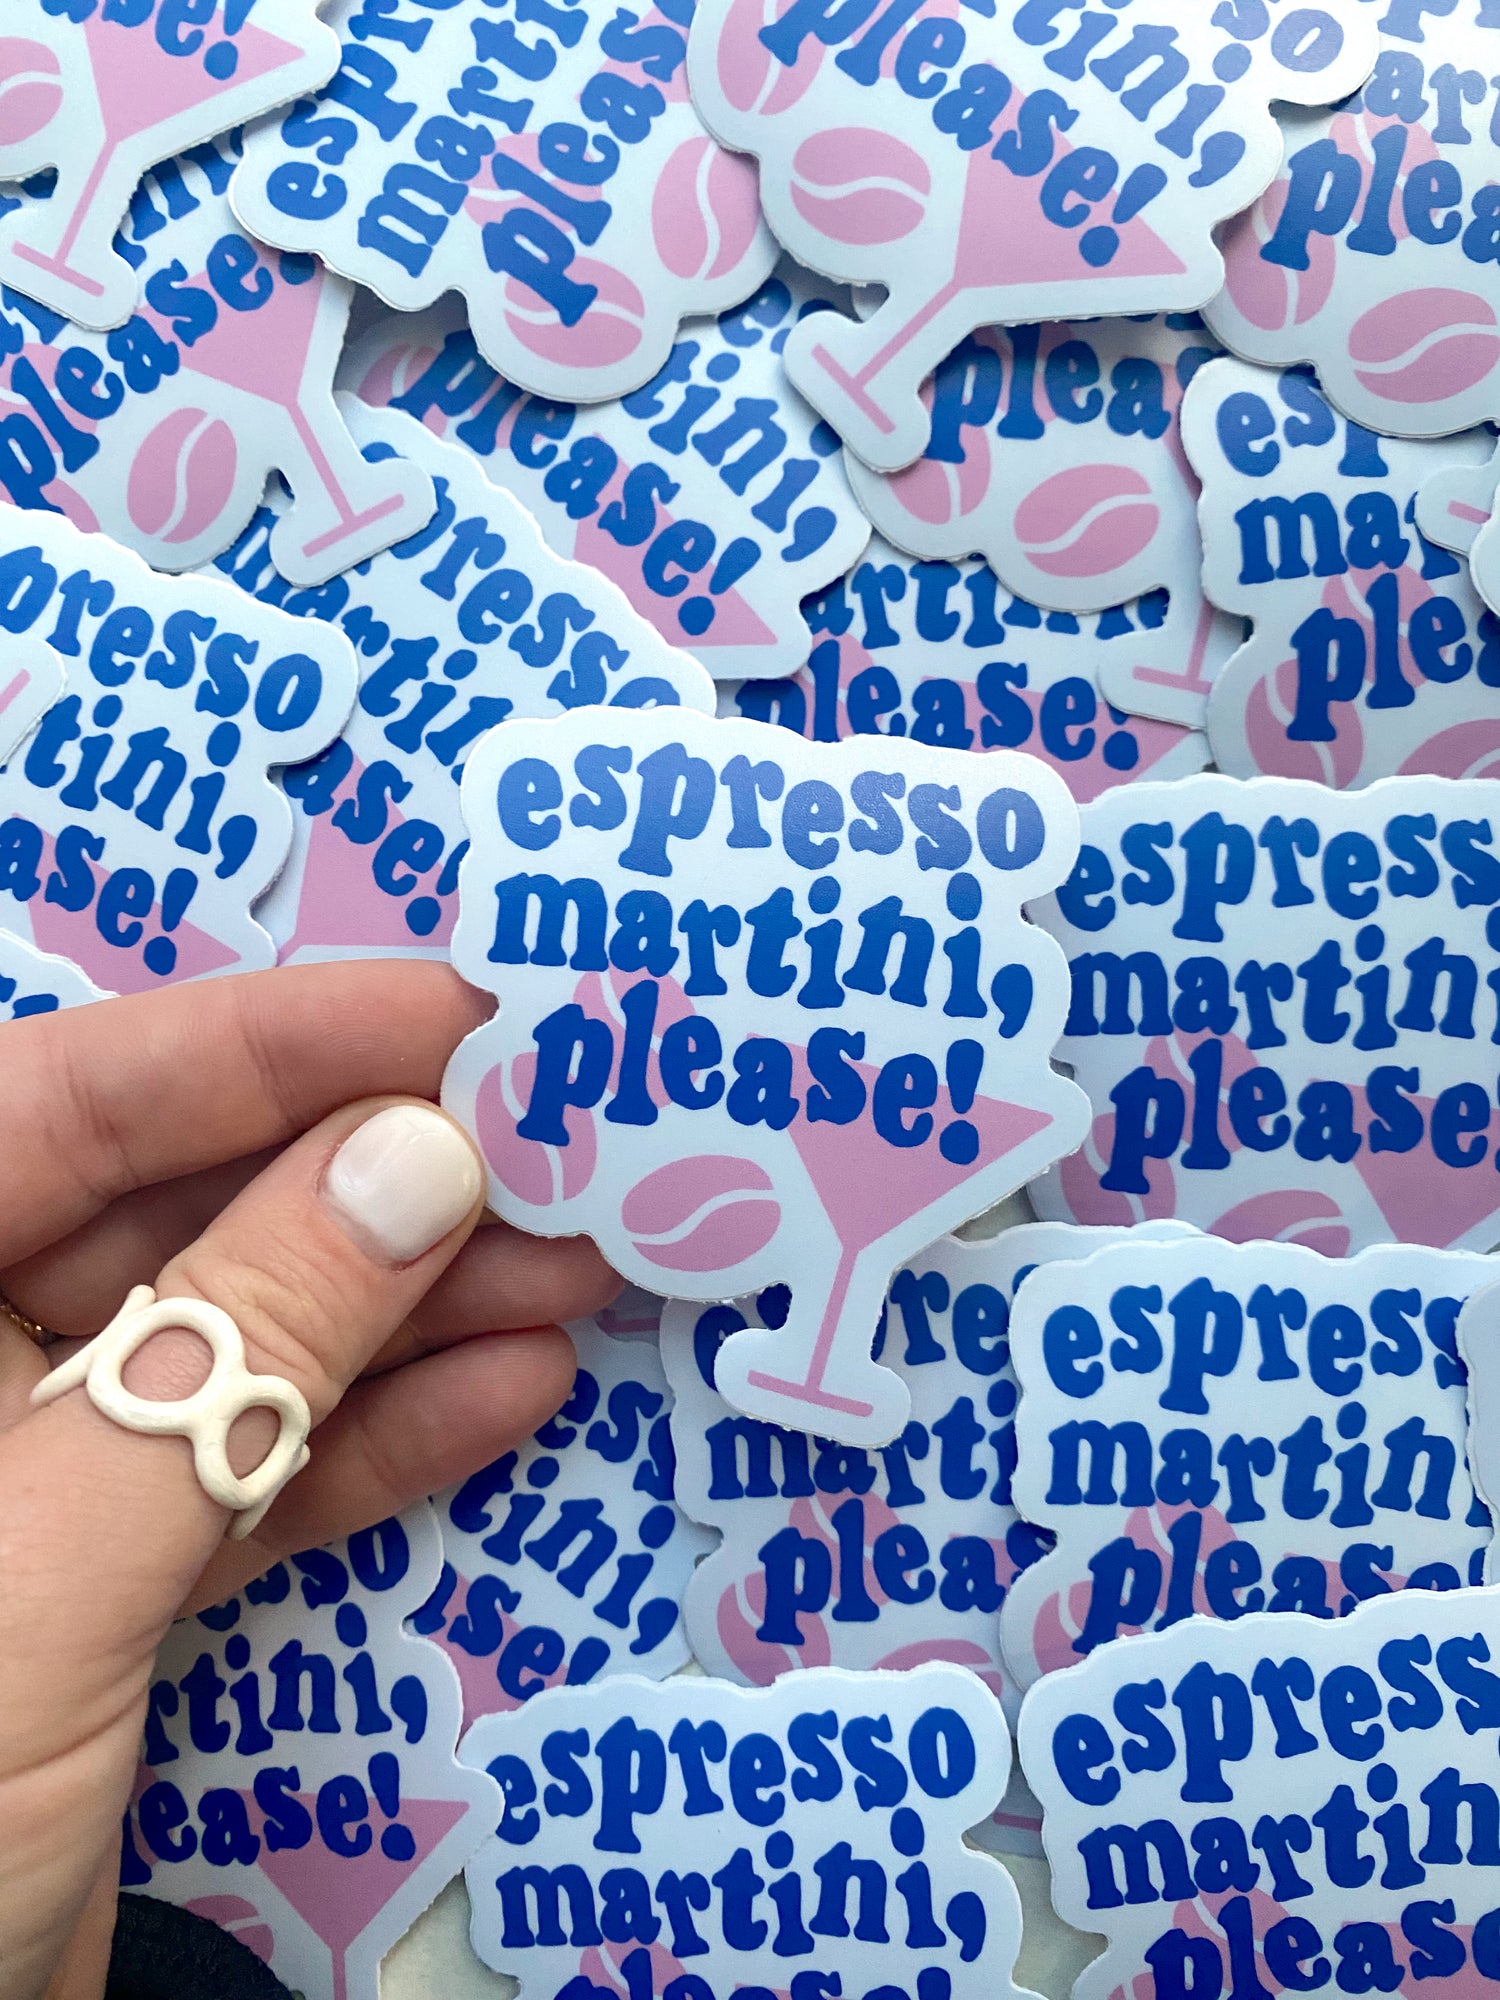 Espresso Martini, Please!